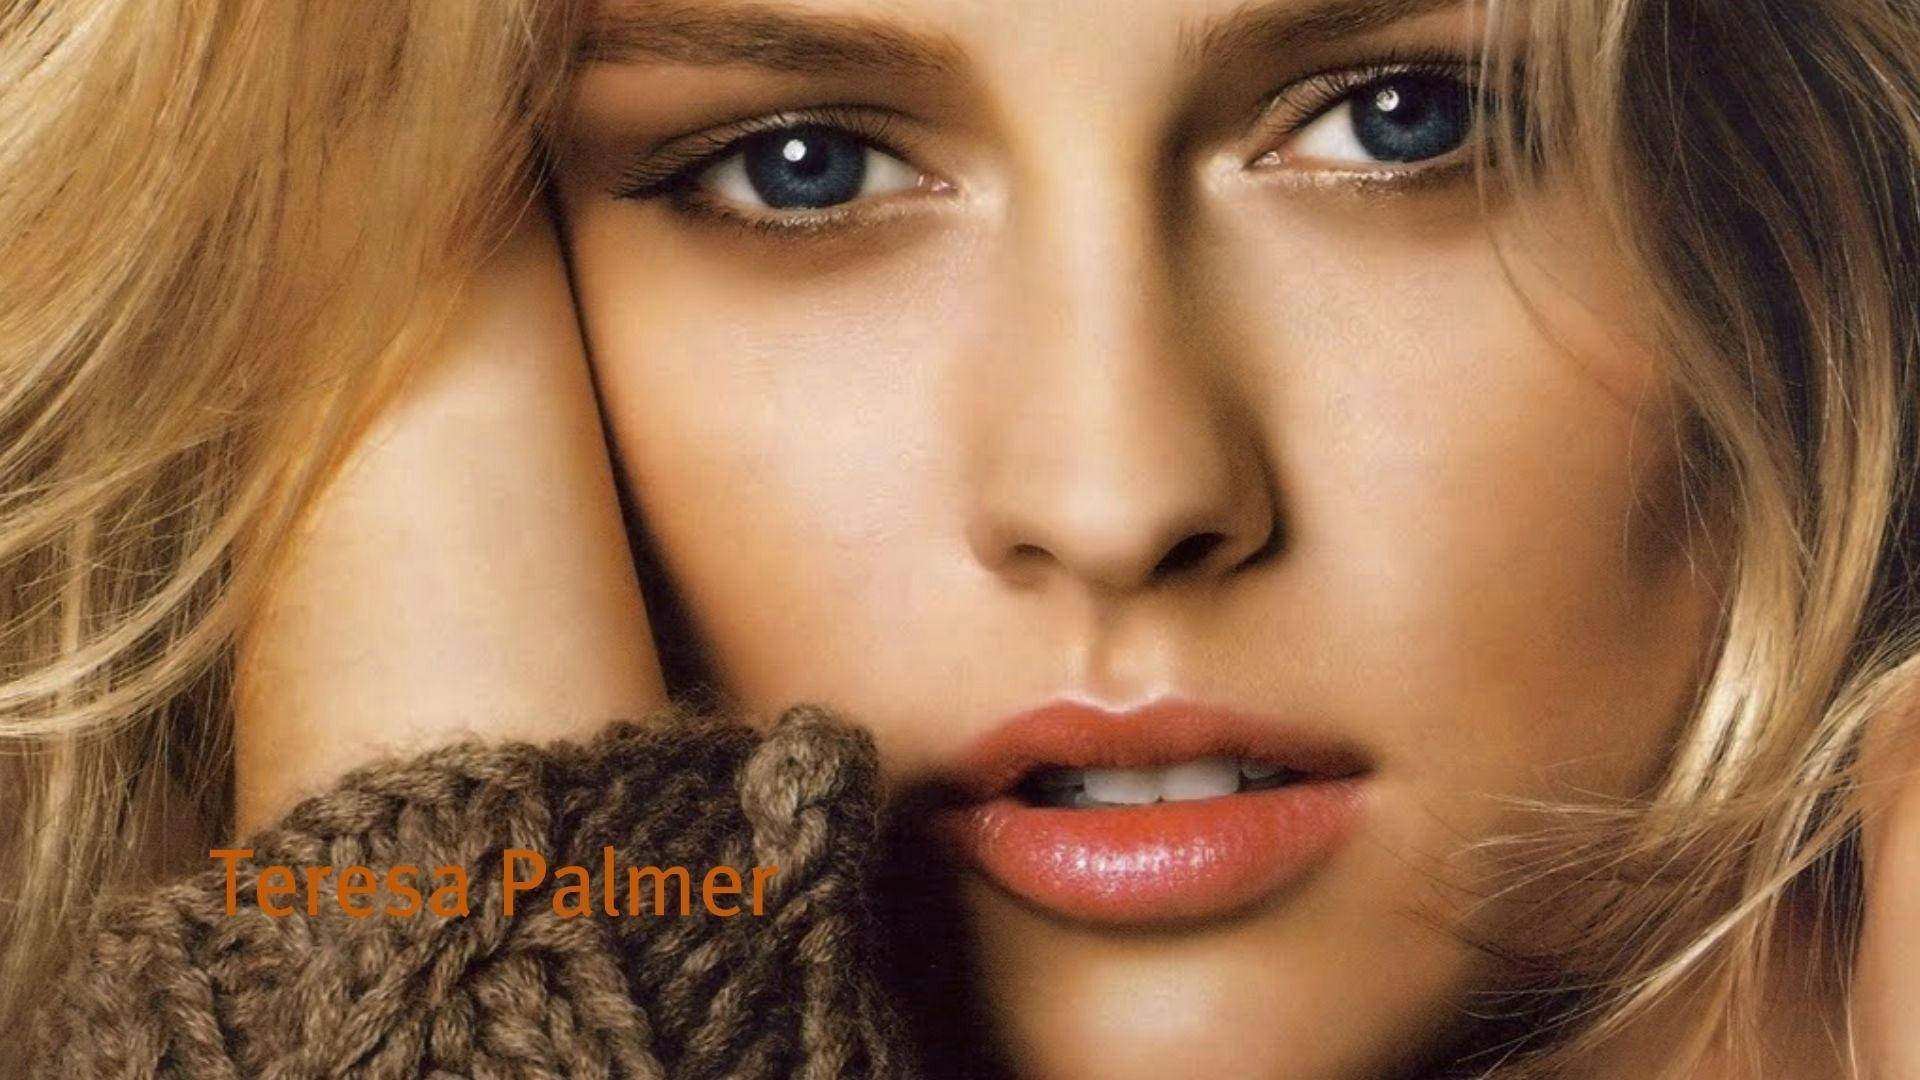 Teresa Palmer Close-Up Face Photo Wallpaper